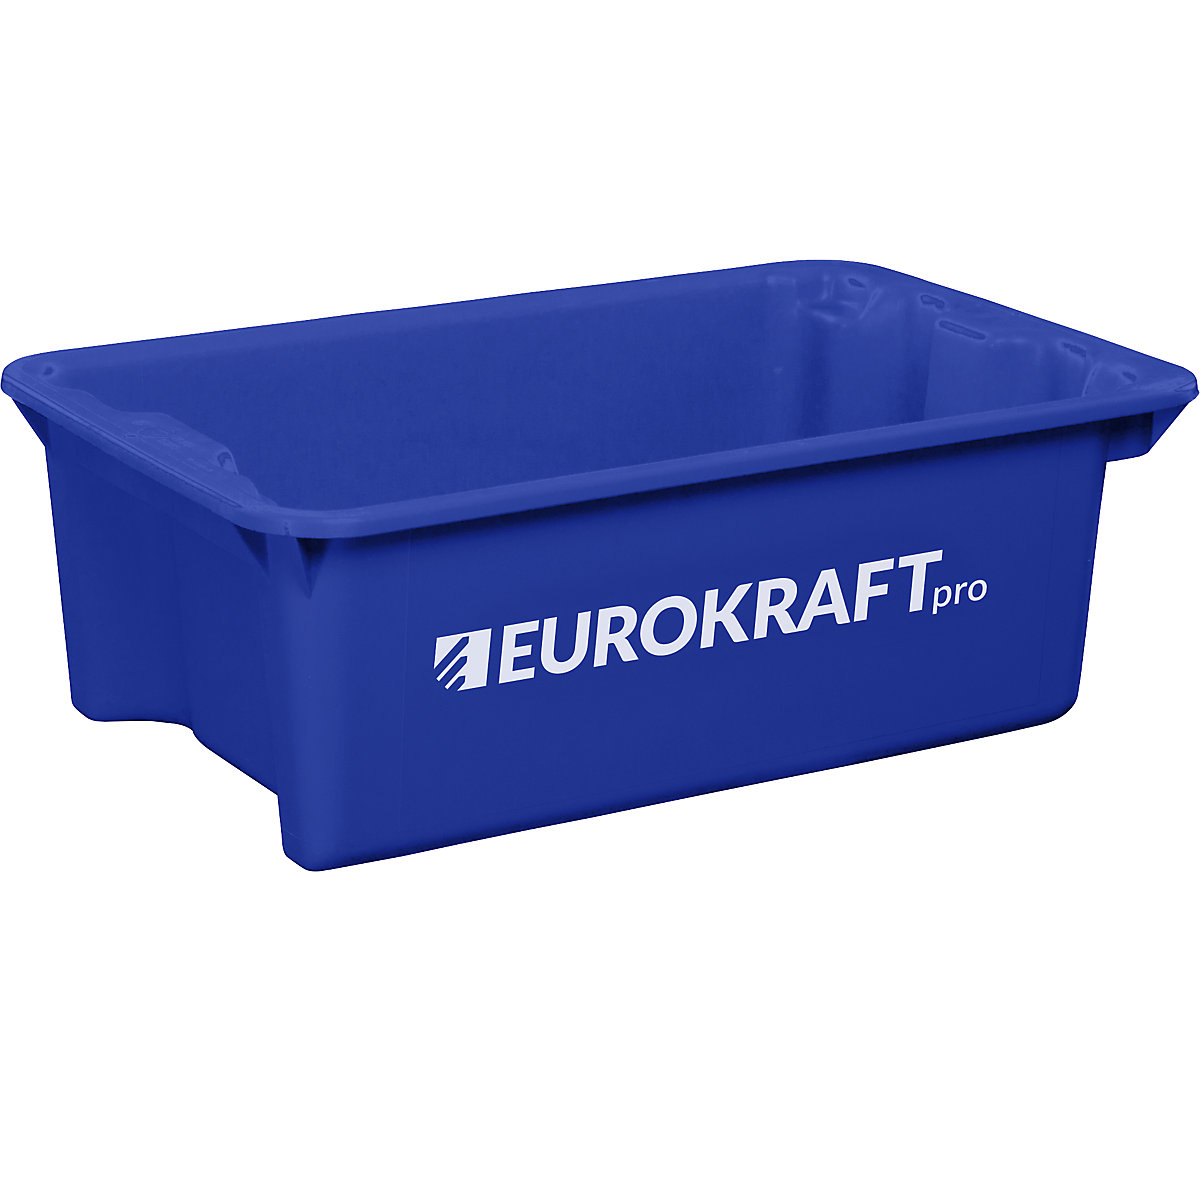 EUROKRAFTpro – Otočná stohovacia nádoba z polypropylénu vhodného pre potraviny, objem 34 litrov, OJ 3 ks, steny a dno uzatvorené, modrá